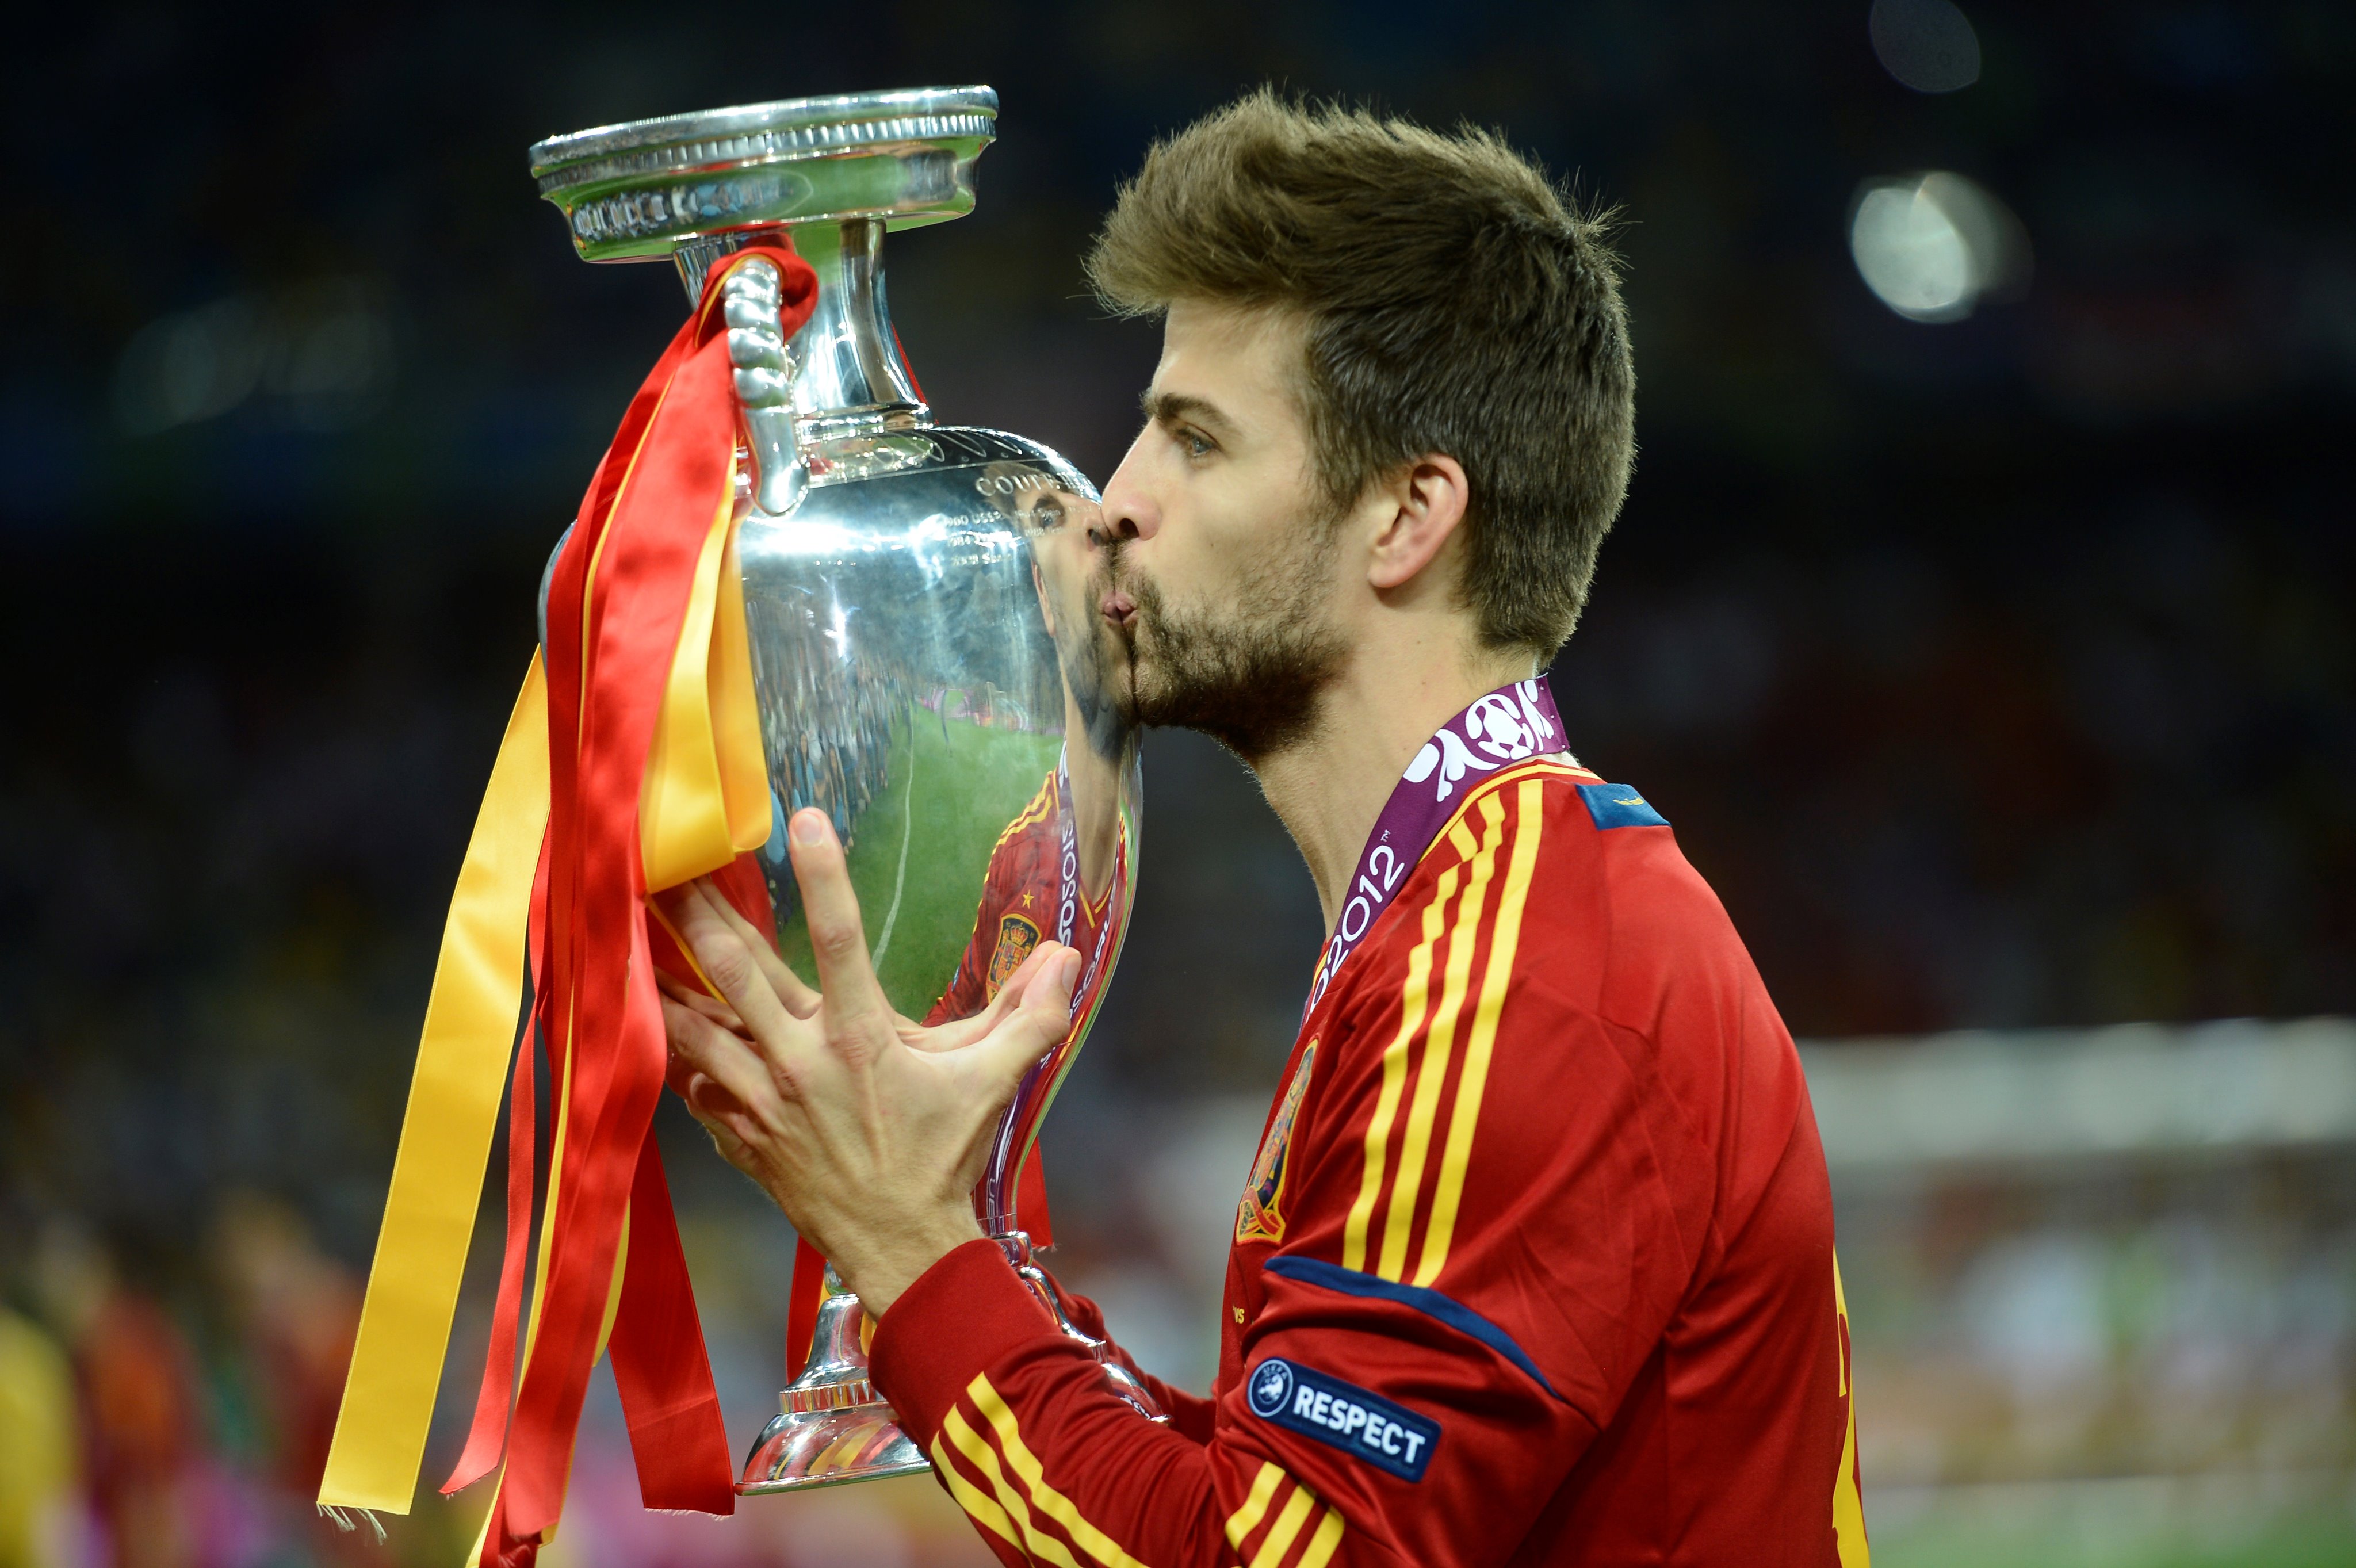 Na quarta posição também com 35 troféus está o zagueiro espanhol e do Barcelona, Gerard Piqué. Ele ganhou títulos no Barcelona e na seleção espanhola. 